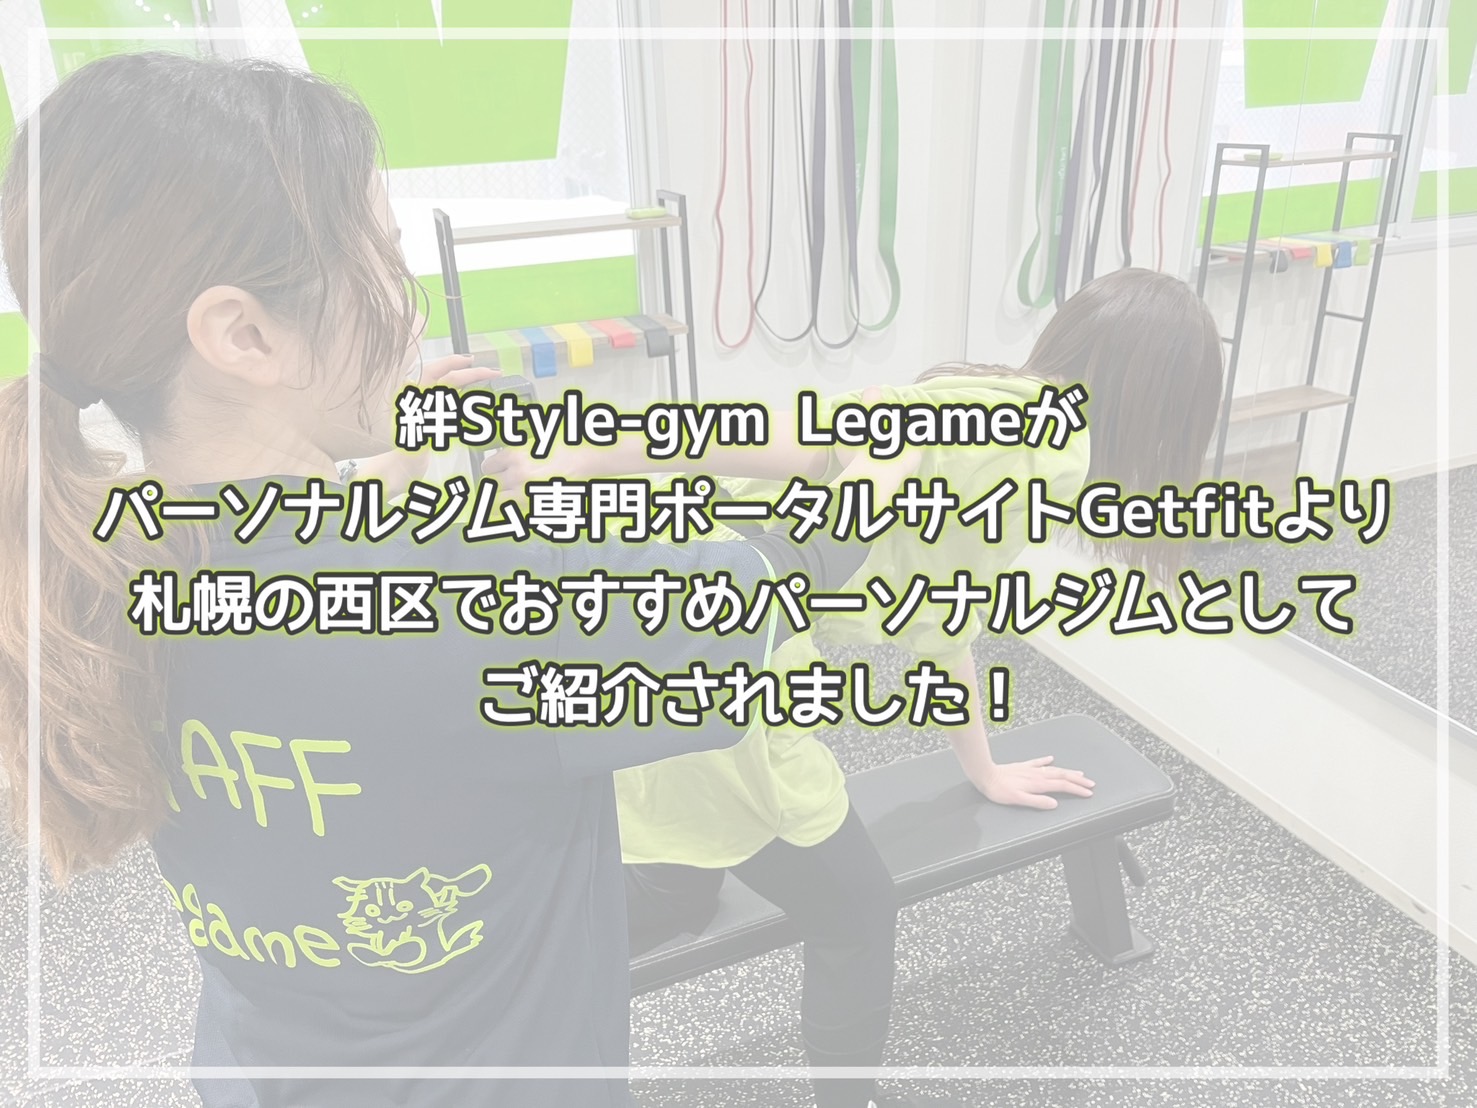 絆Style-gym Legame（レガーメ）がパーソナルジム専門ポータルサイトGetfitより札幌の西区でおすすめパーソナルジムとしてご紹介されました！